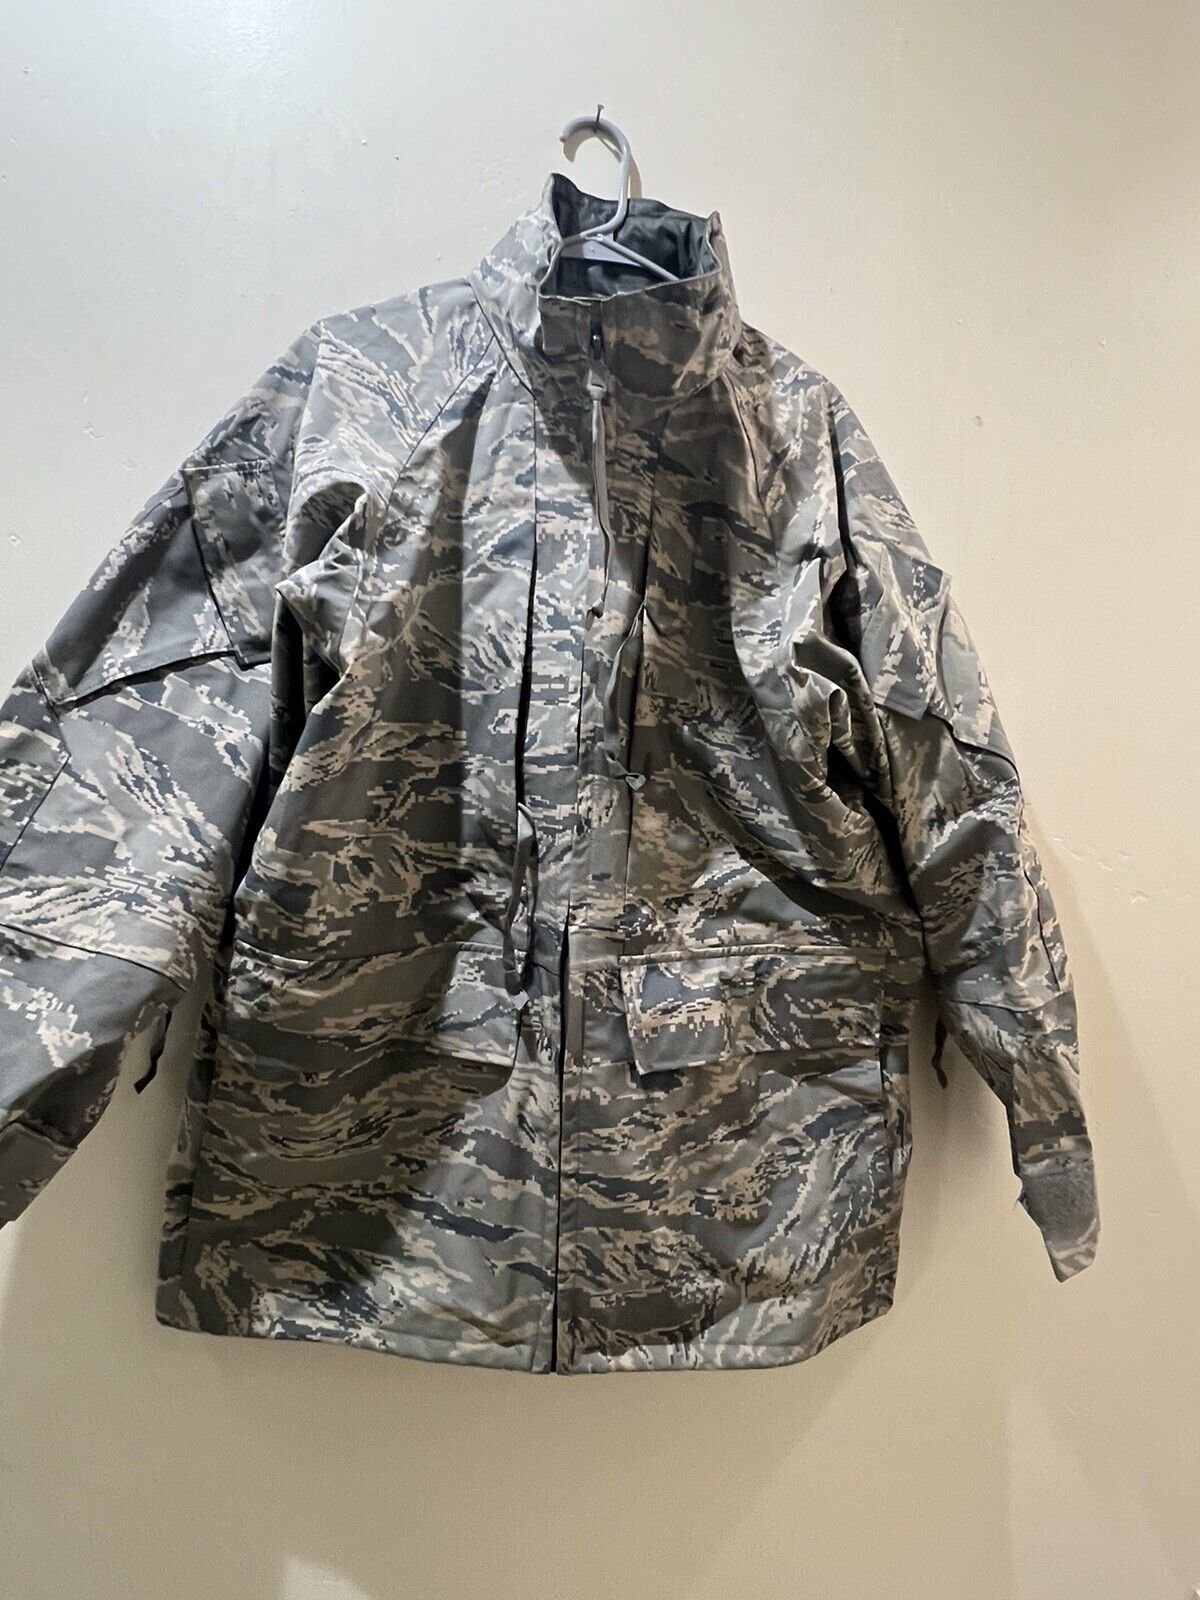 🇺🇸 USGI ABU Air Force Goretex Parka Cold Wet Jacket MED REG USAF